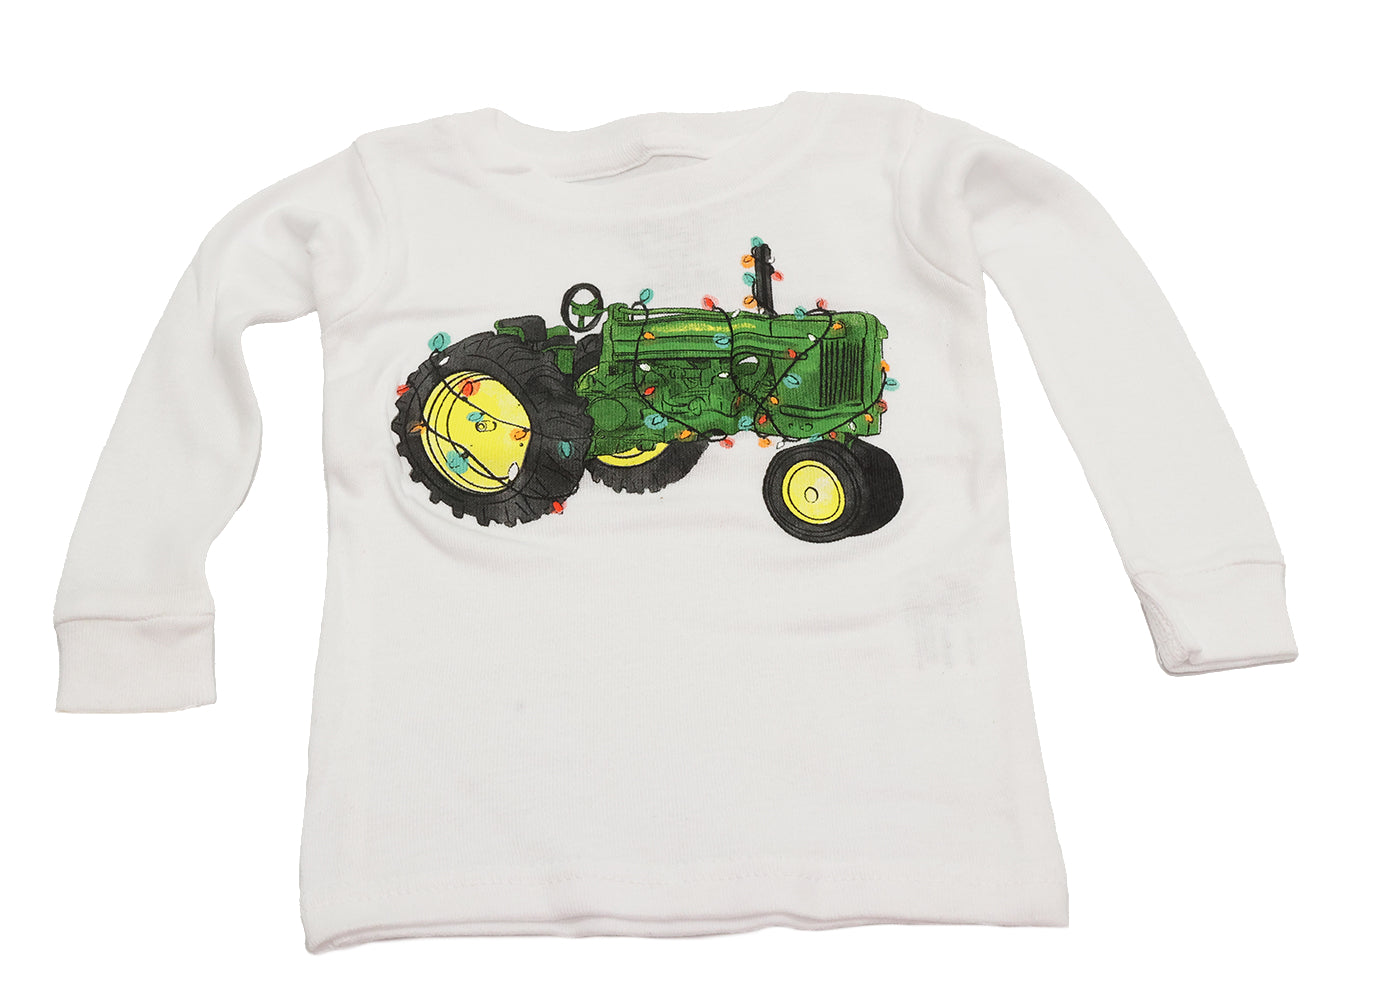 John Deere DGT Infant (12M) Holiday Tractor PJ Top - LP80846